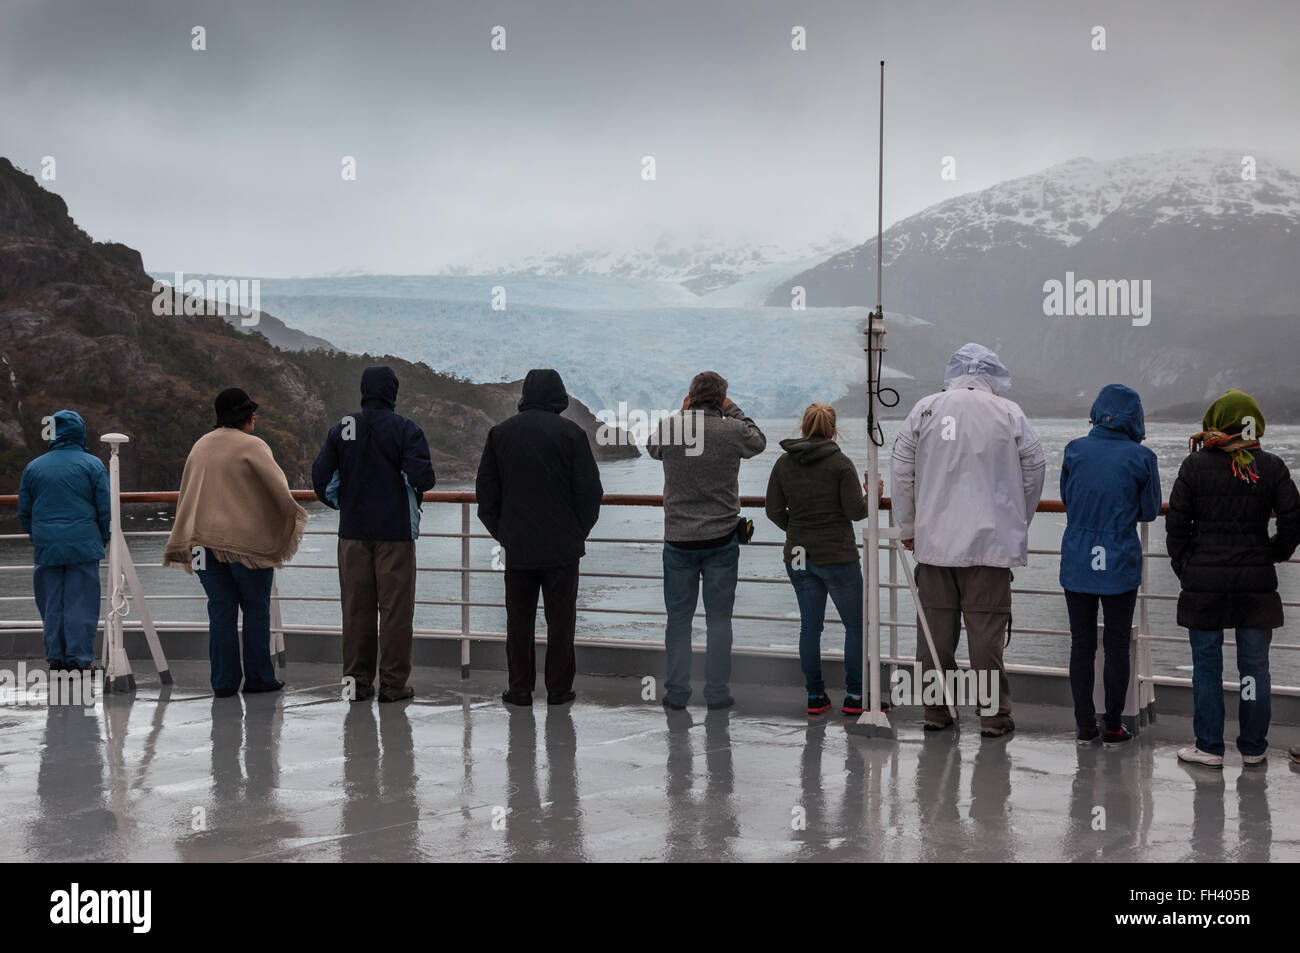 Passengers on board the cruise ship Veendam viewing Amilia Glacier Stock Photo